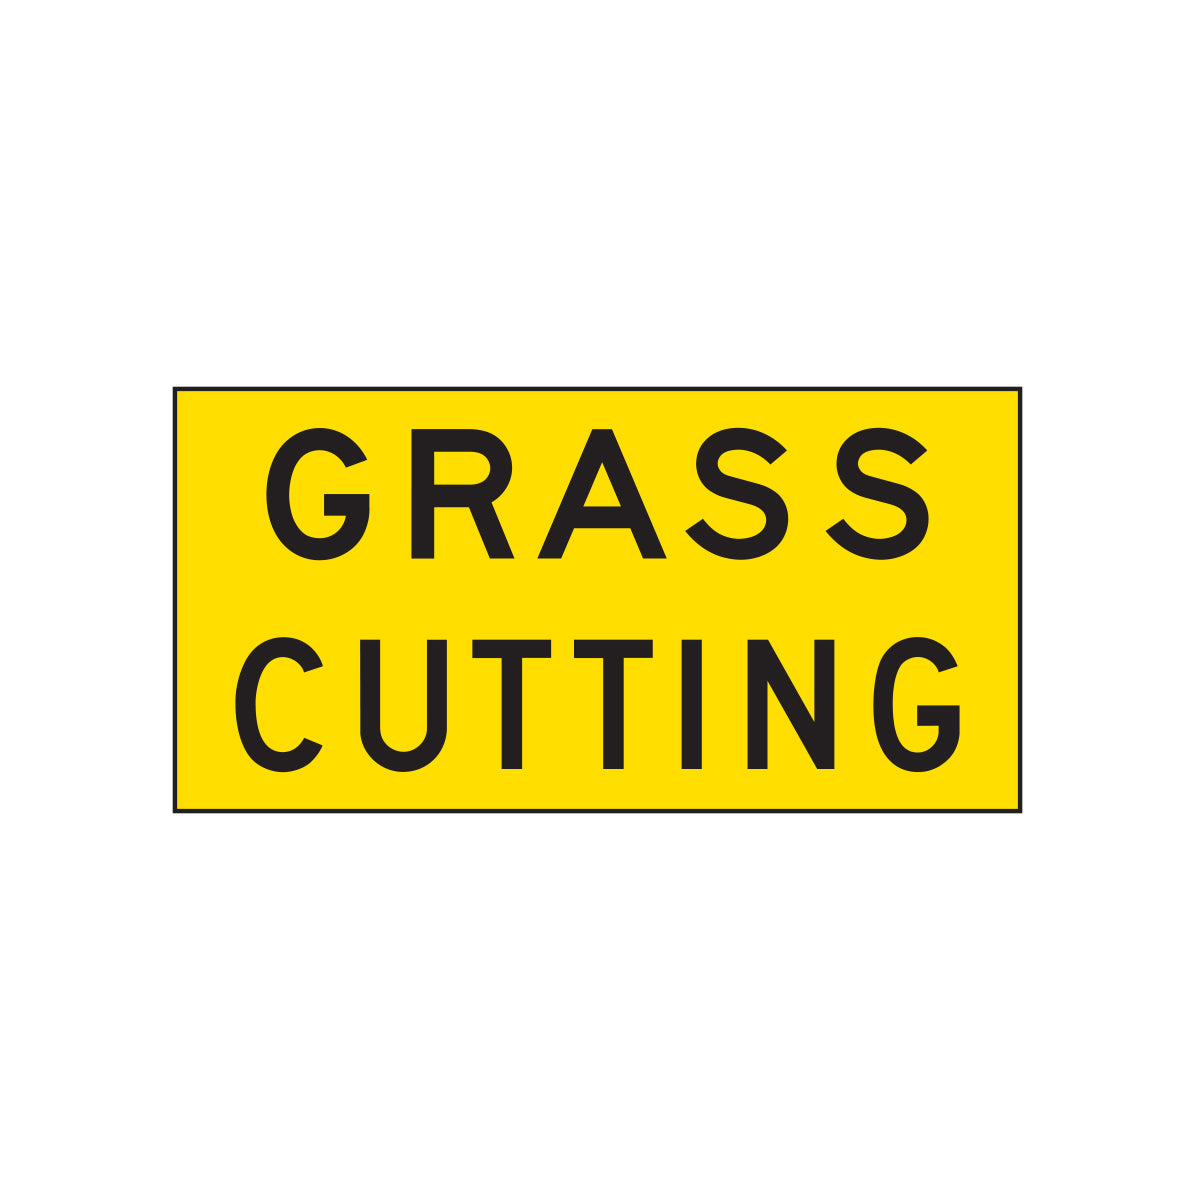 Warning: Grass Cutting Sign